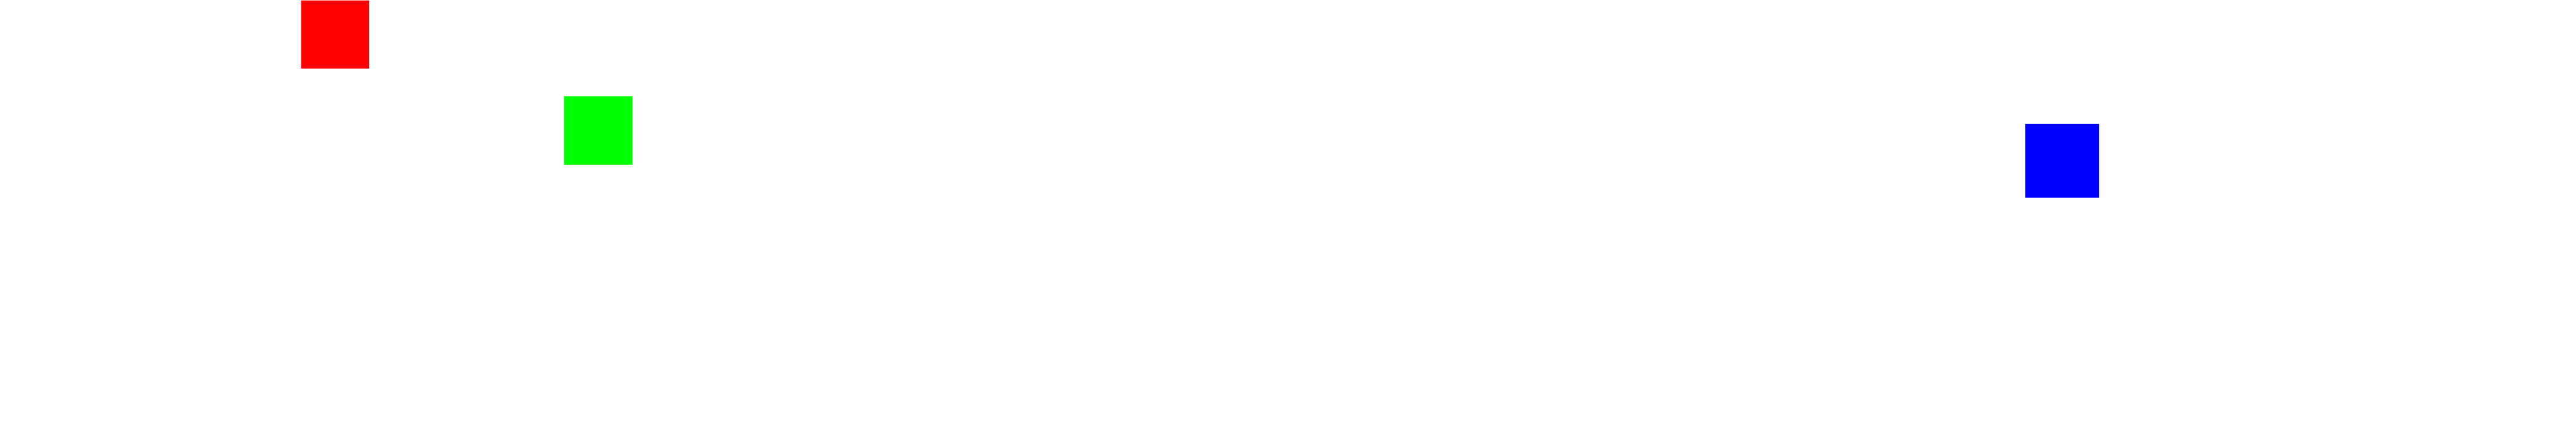 pixelshaker_logo_w_1000px